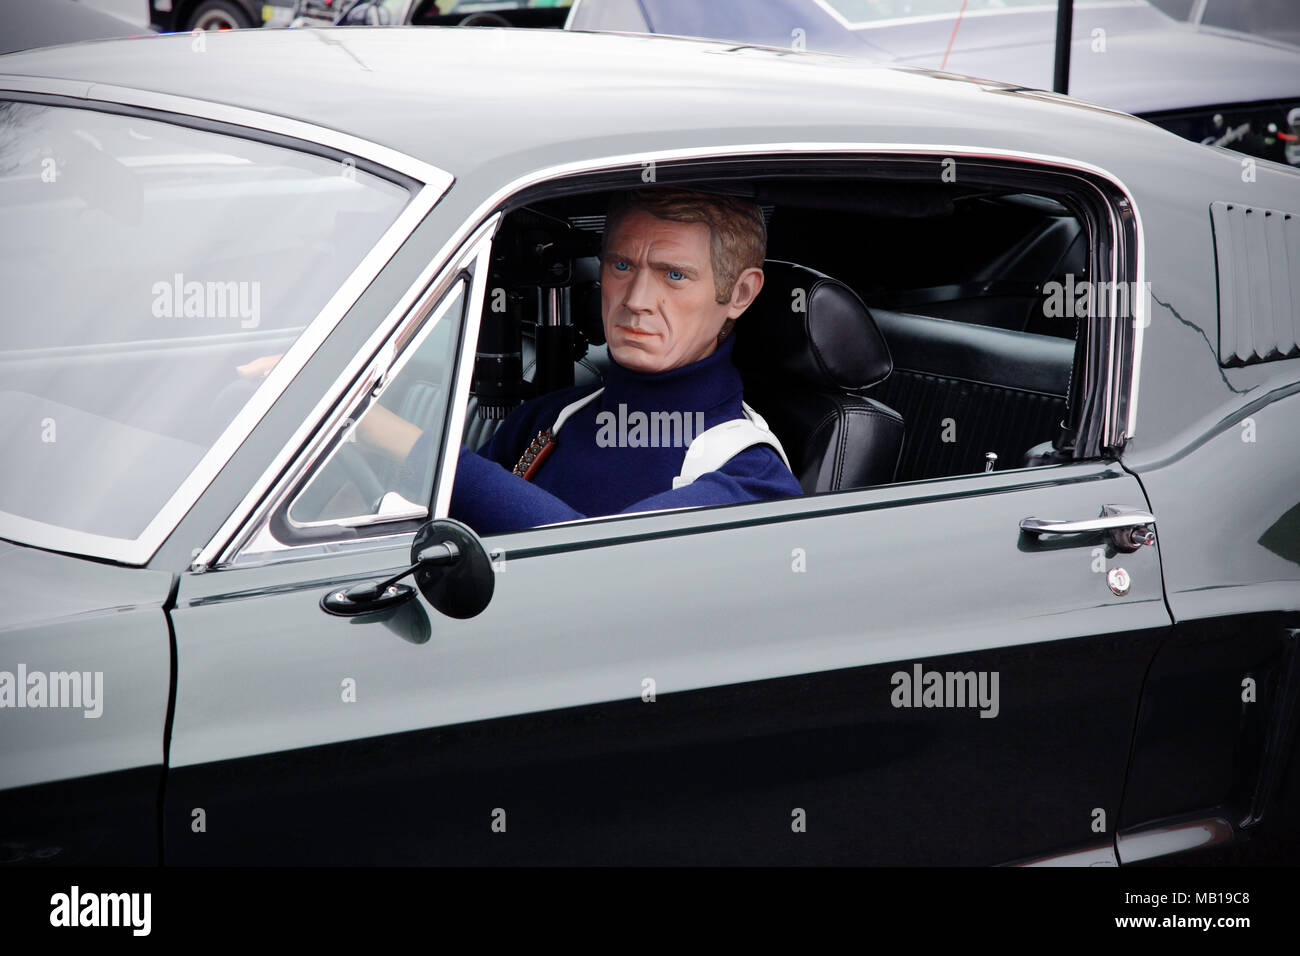 Steve McQueen model or mannequin in a Ford Mustang GT (the Bullitt film car). Stock Photo